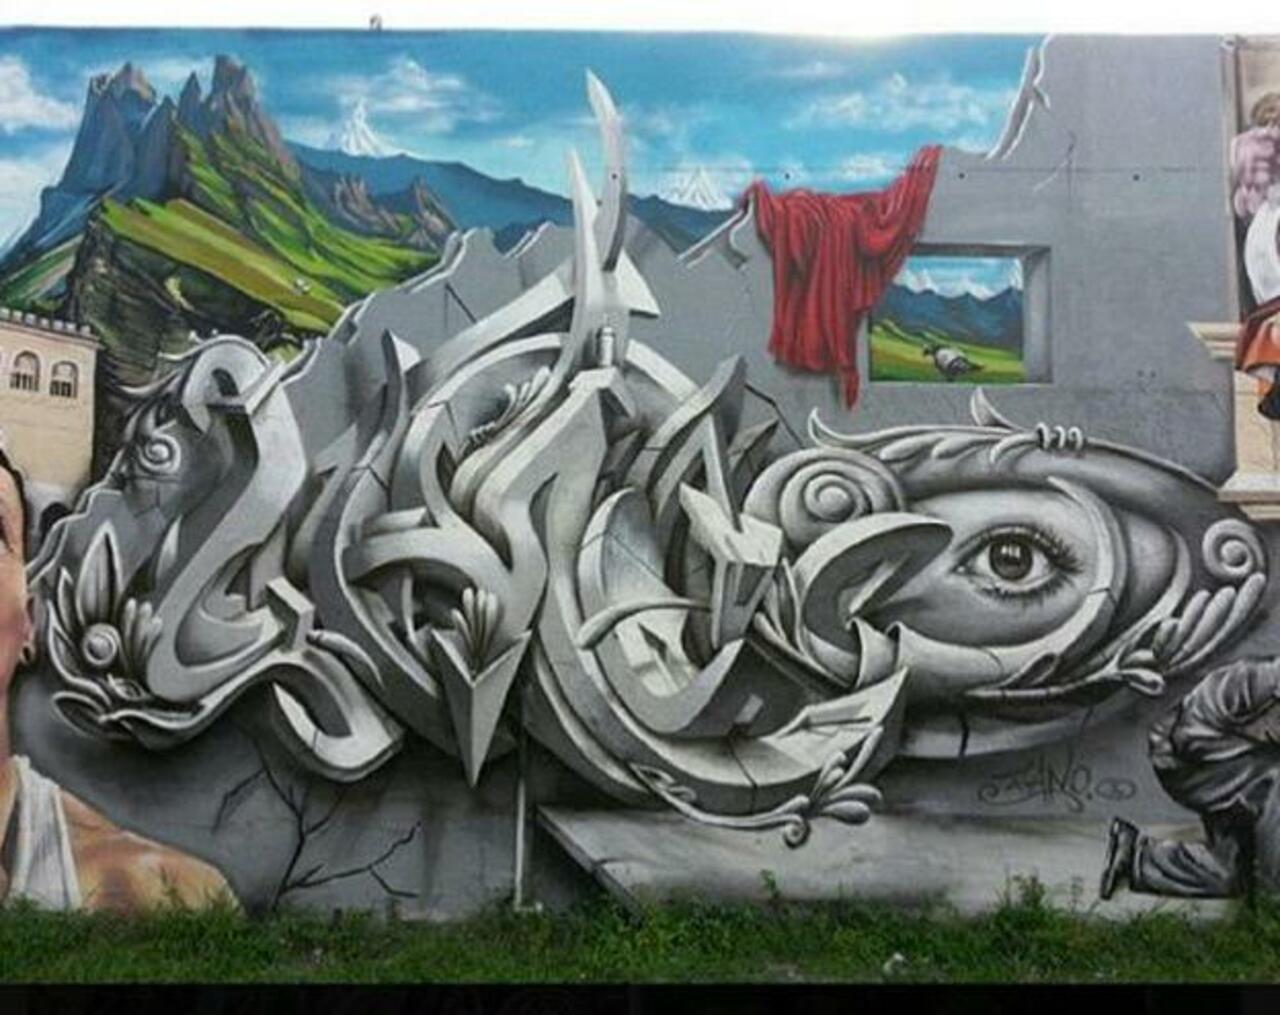 Street Art by Smog One

#art #mural #graffiti #streetart http://t.co/E9REX1L6DY